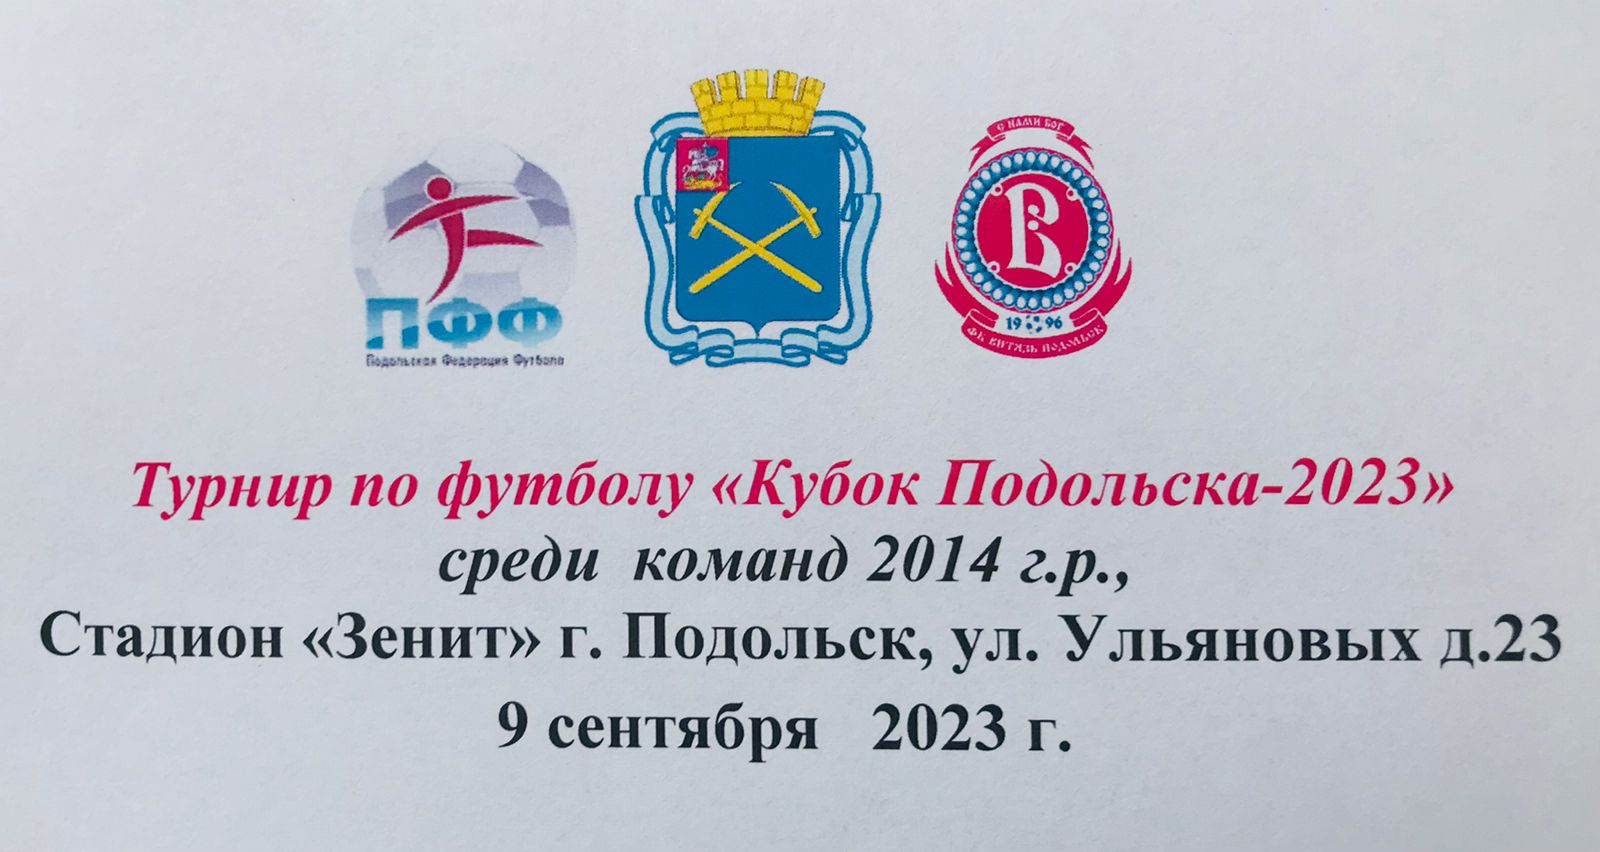 Олимп 2014 - ЦДКА 2015 (1 тайм)